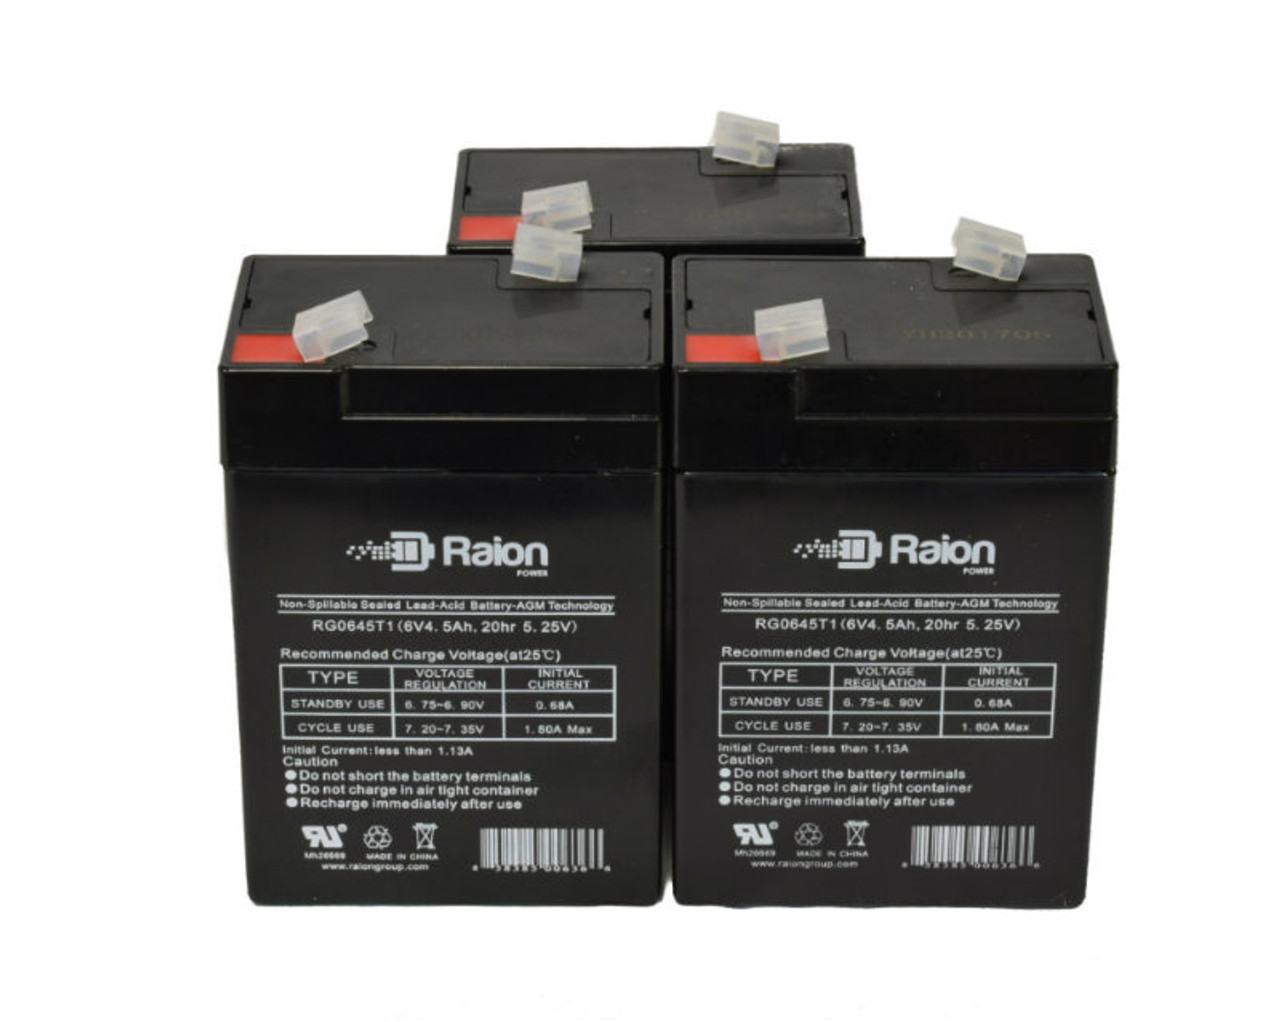 Raion Power RG0645T1 6V 4.5Ah Replacement Medical Equipment Battery for Nellcor Puritan-Bennett Pulse Oximeter N1000 - 3 Pack